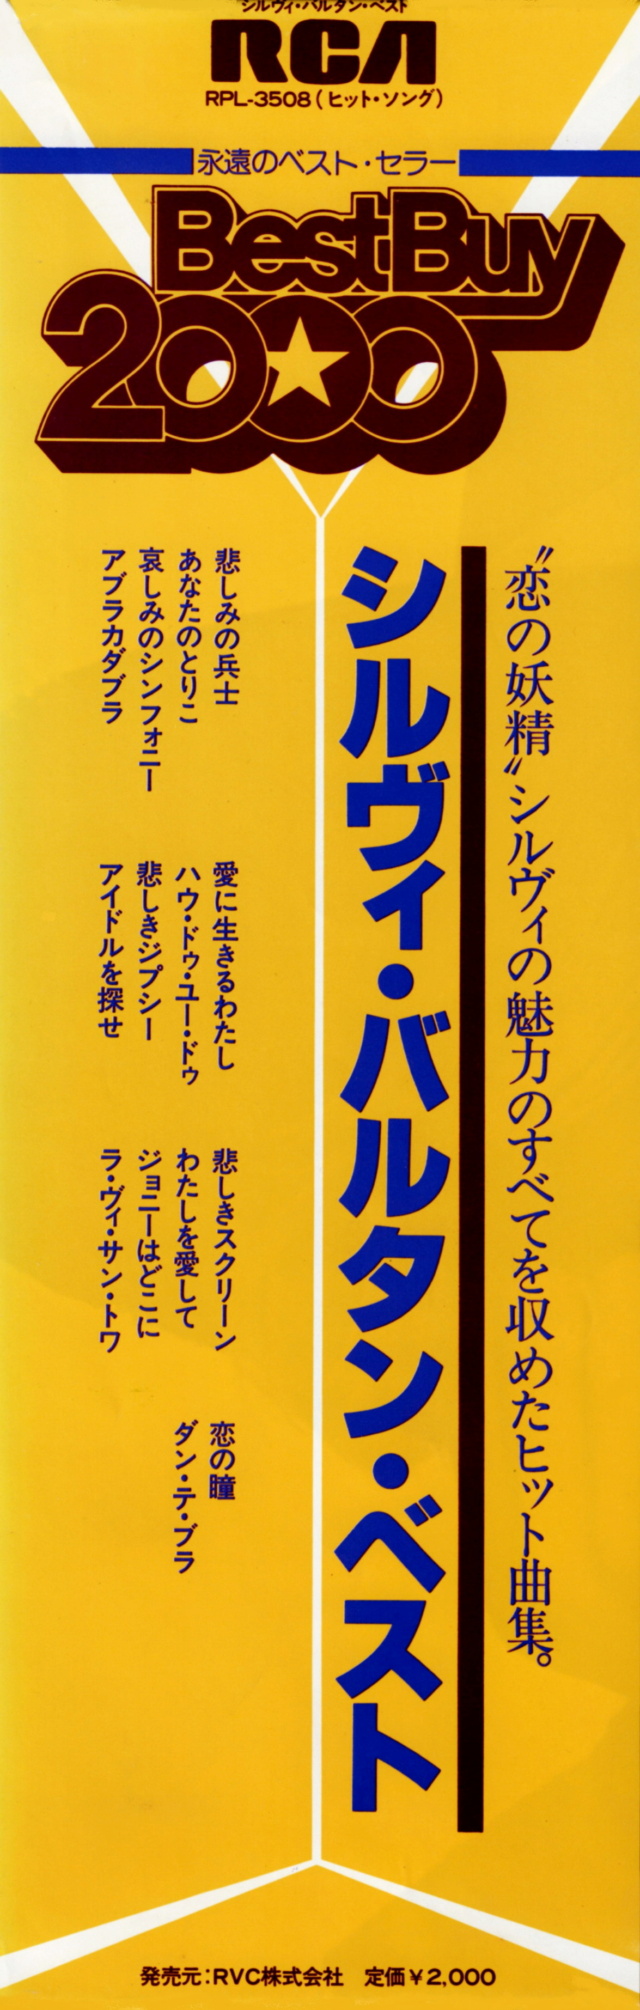 Discographie Japonaise - 4ème partie (33 T COMPILATION) - Page 16 Jpn_rp46